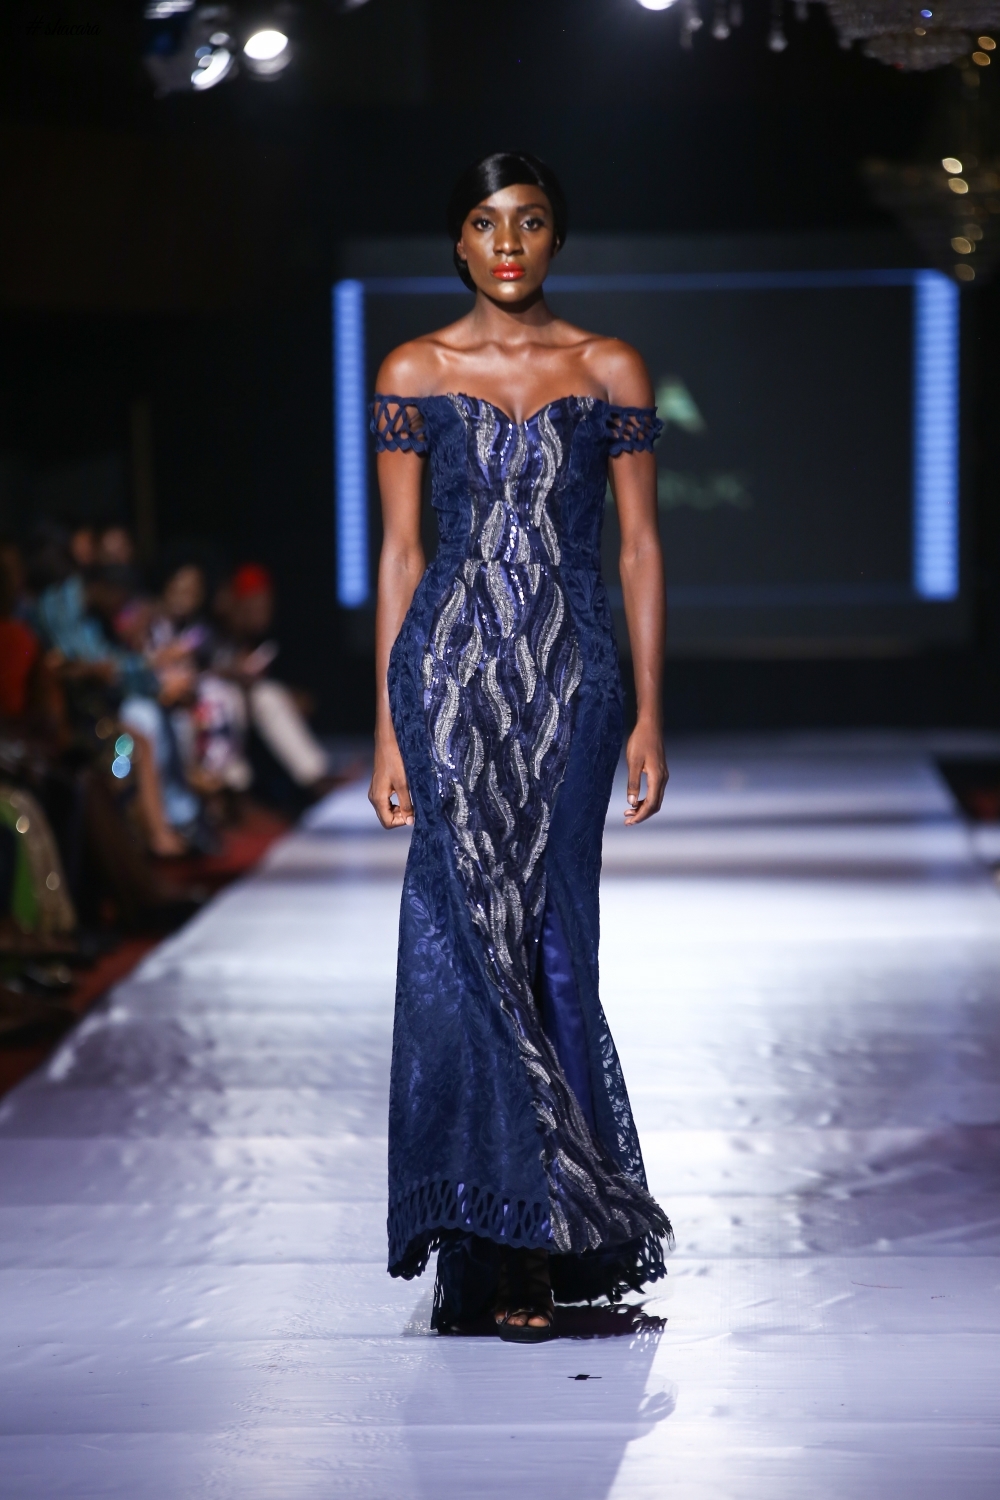 #AFWN17! Africa Fashion Week Nigeria Day 1: Marobuk